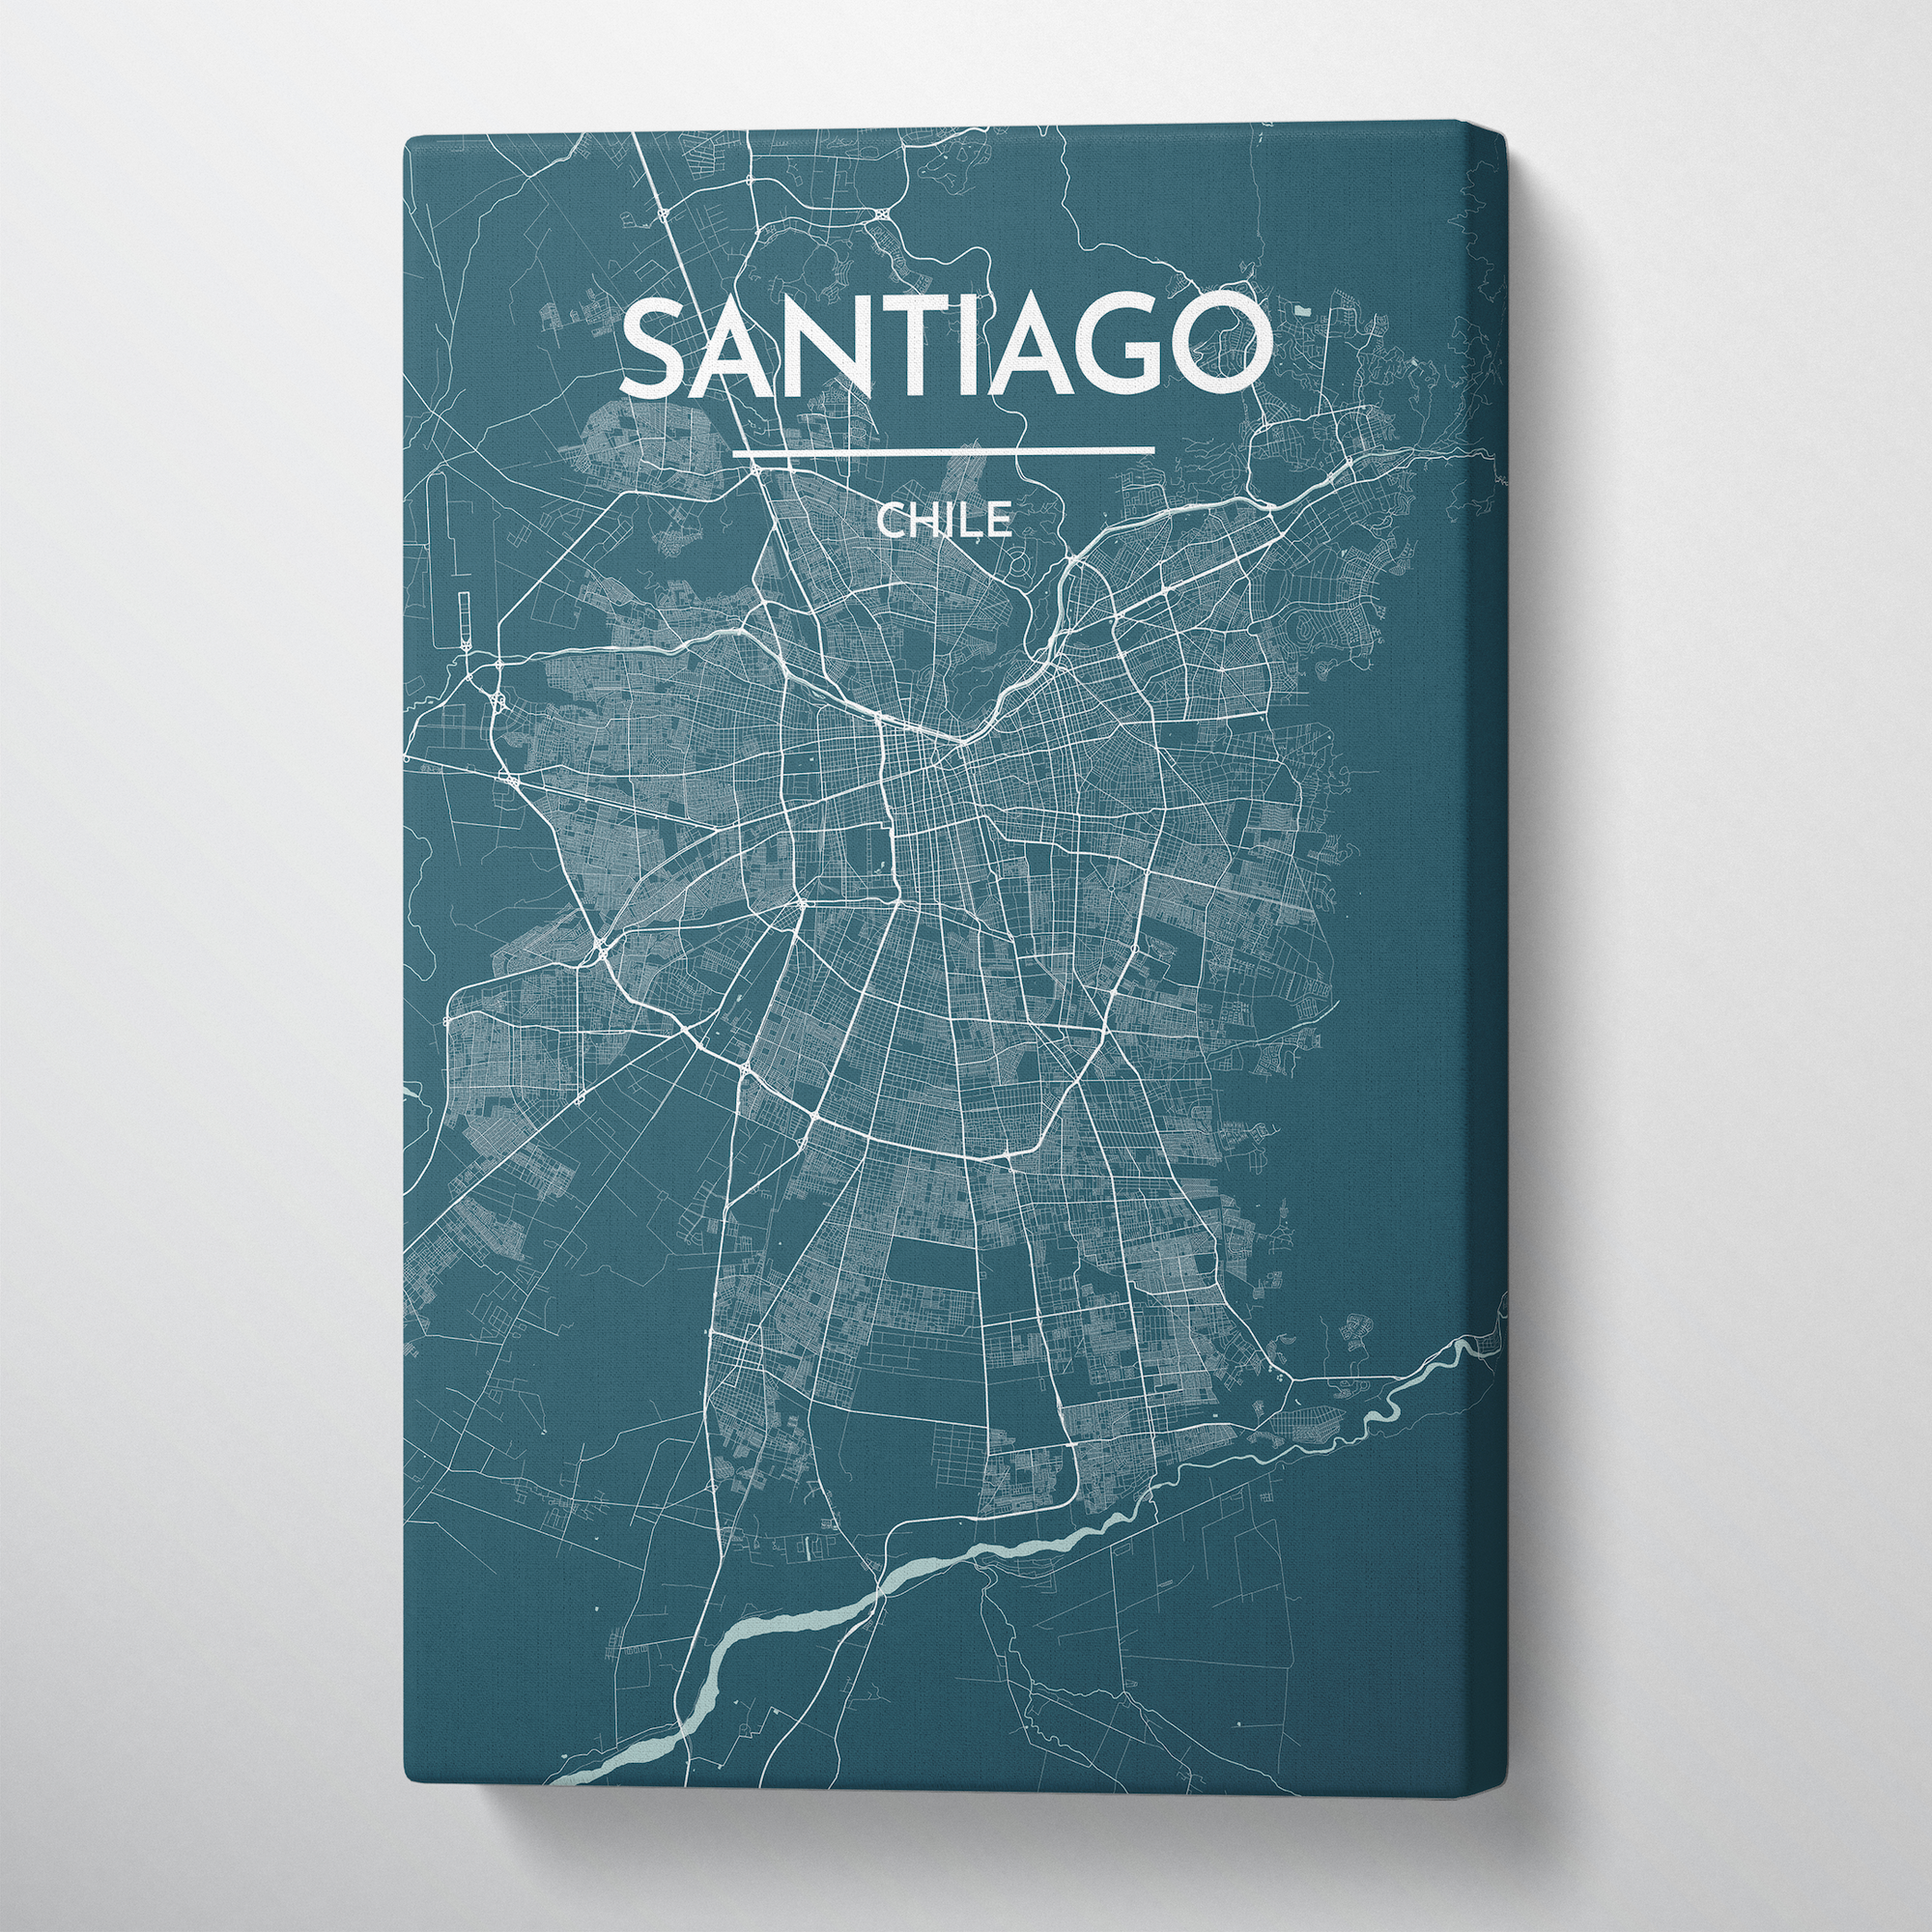 Santiago City Map Canvas Wrap - Point Two Design